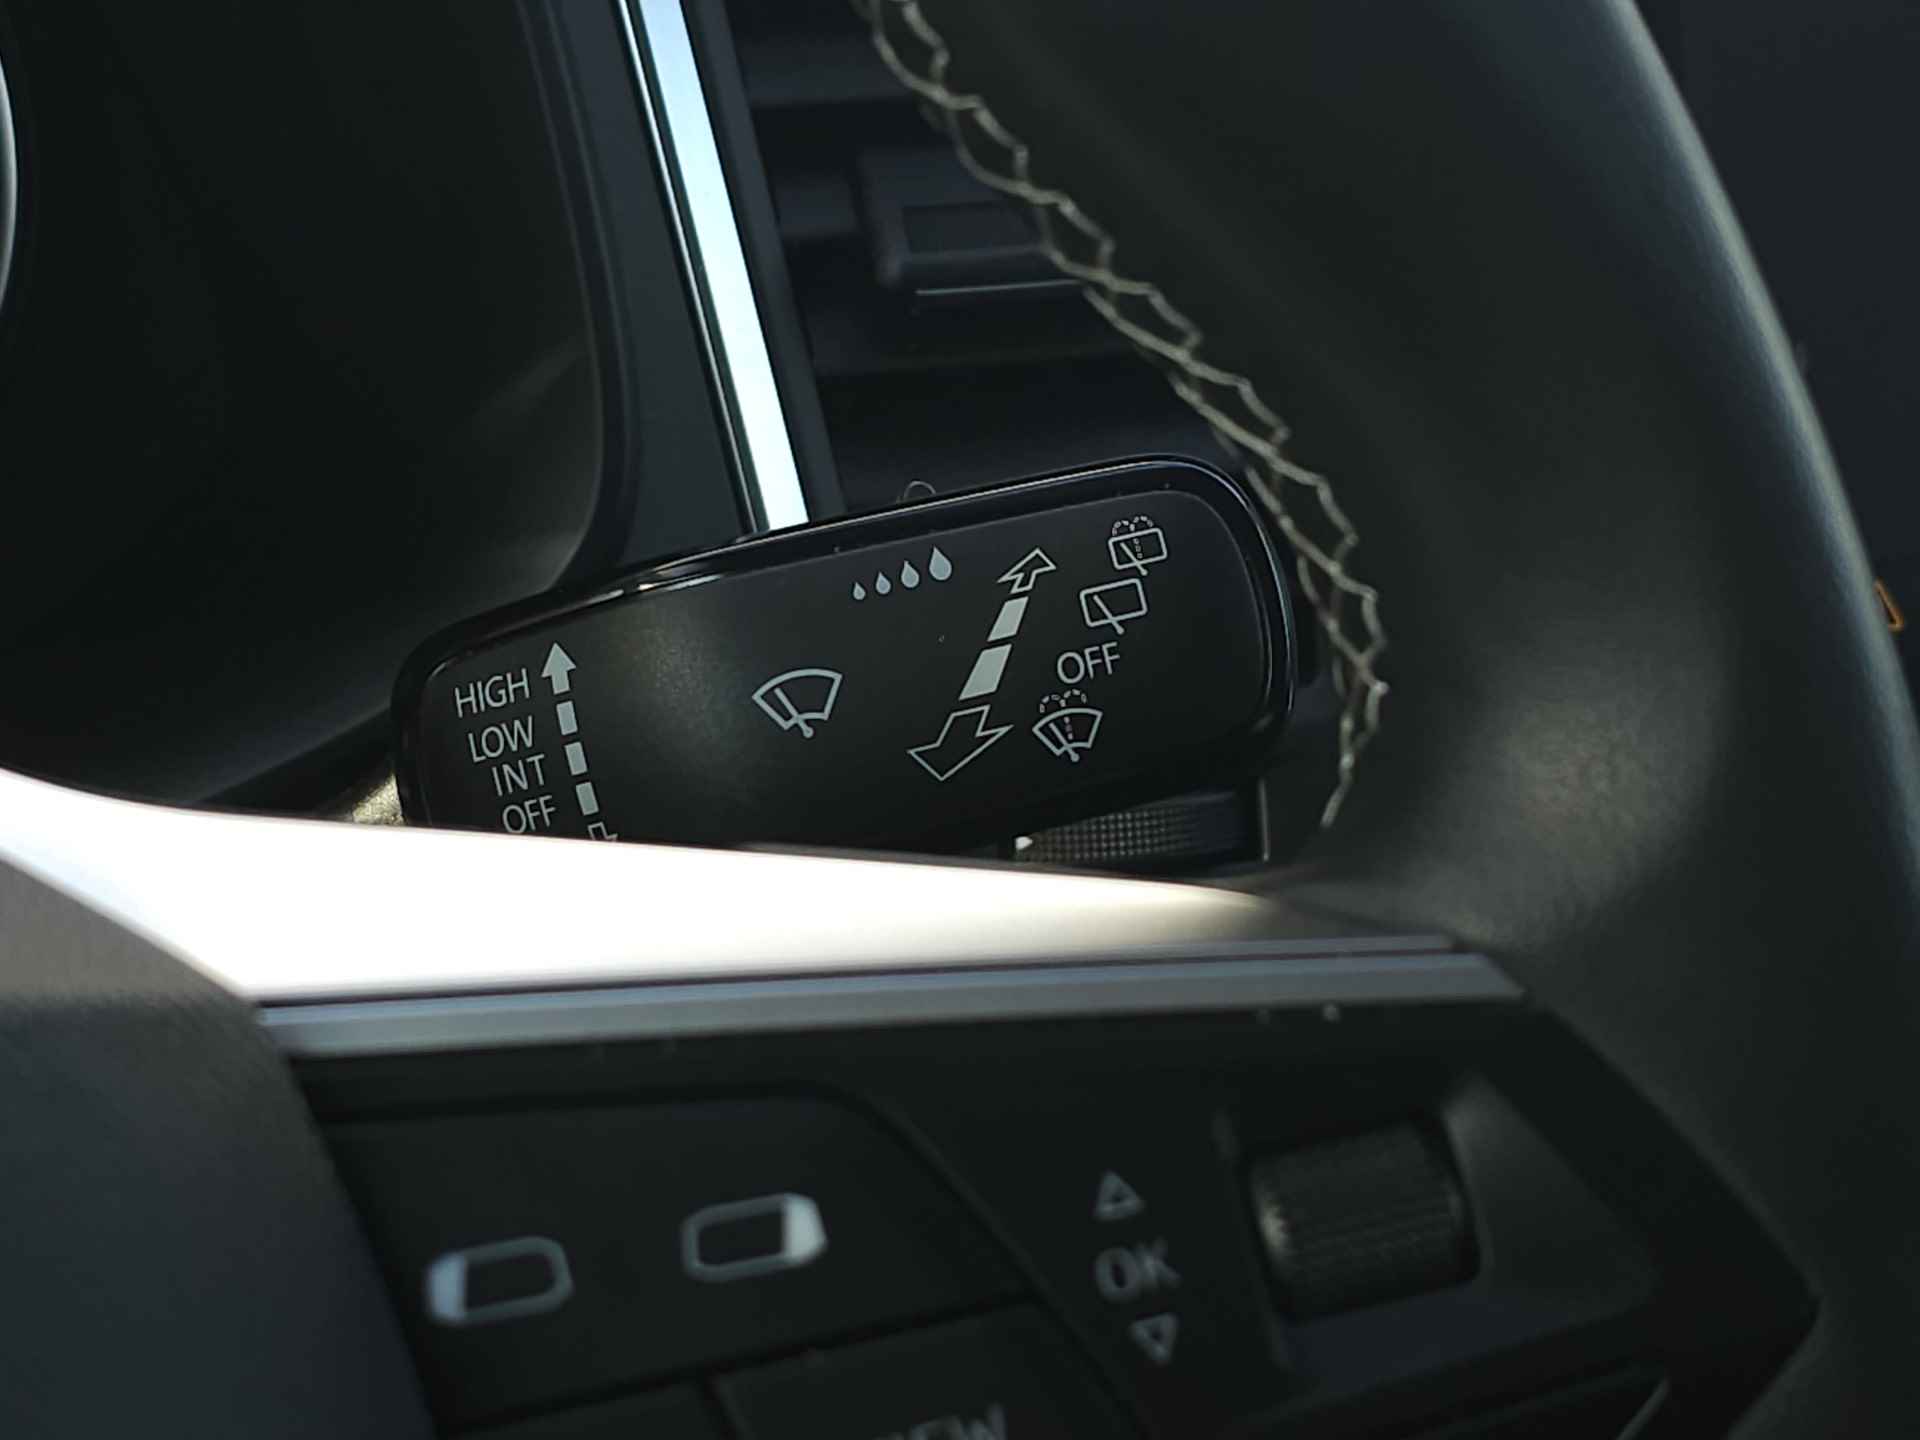 SEAT Ateca 1.0 TSI 110 pk Style Business Intense | Navigatie | LED | Lm velgen | Camera | Sensoren | All Season banden | incl. Bovag rijklaarpakket met 12 maanden garantie | - 24/35